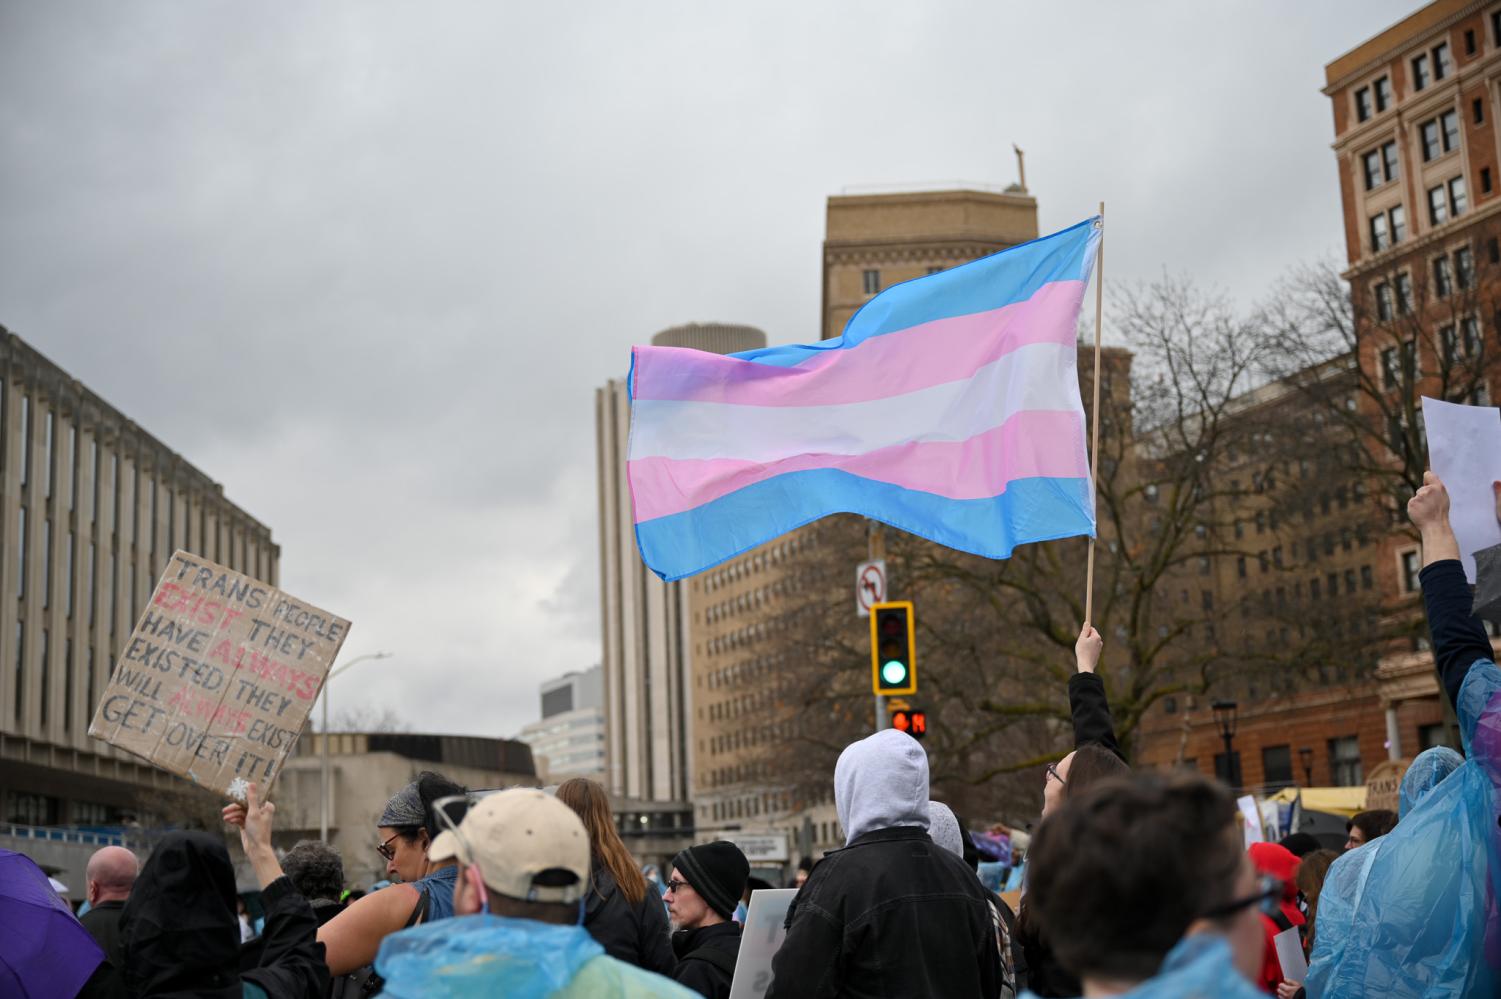 匹兹堡被指定为全国范围内推进性别认同护理的庇护城市，引发全国范围内的反对浪潮